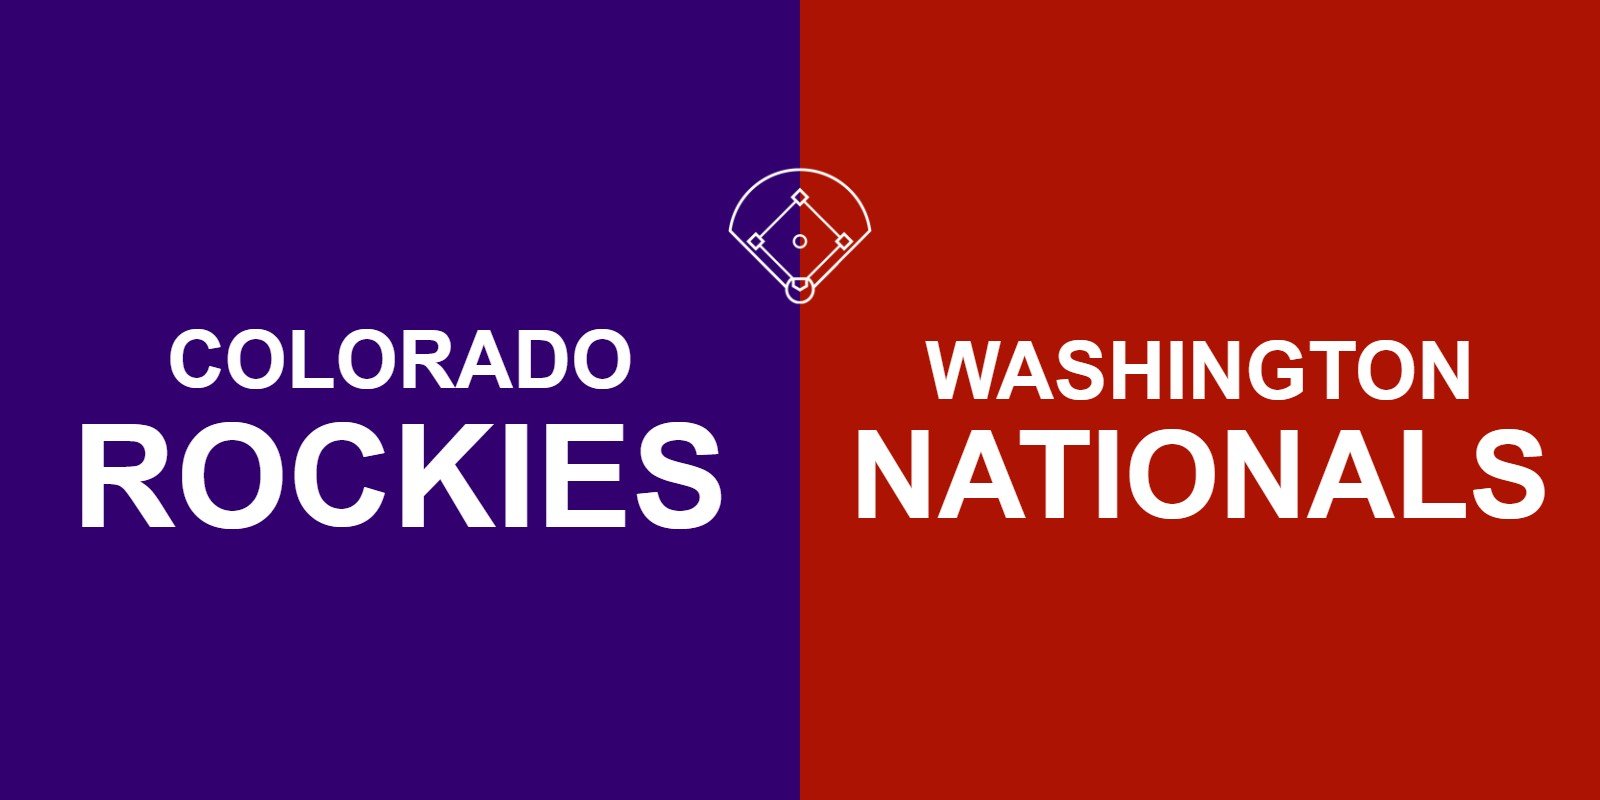 Rockies vs Nationals